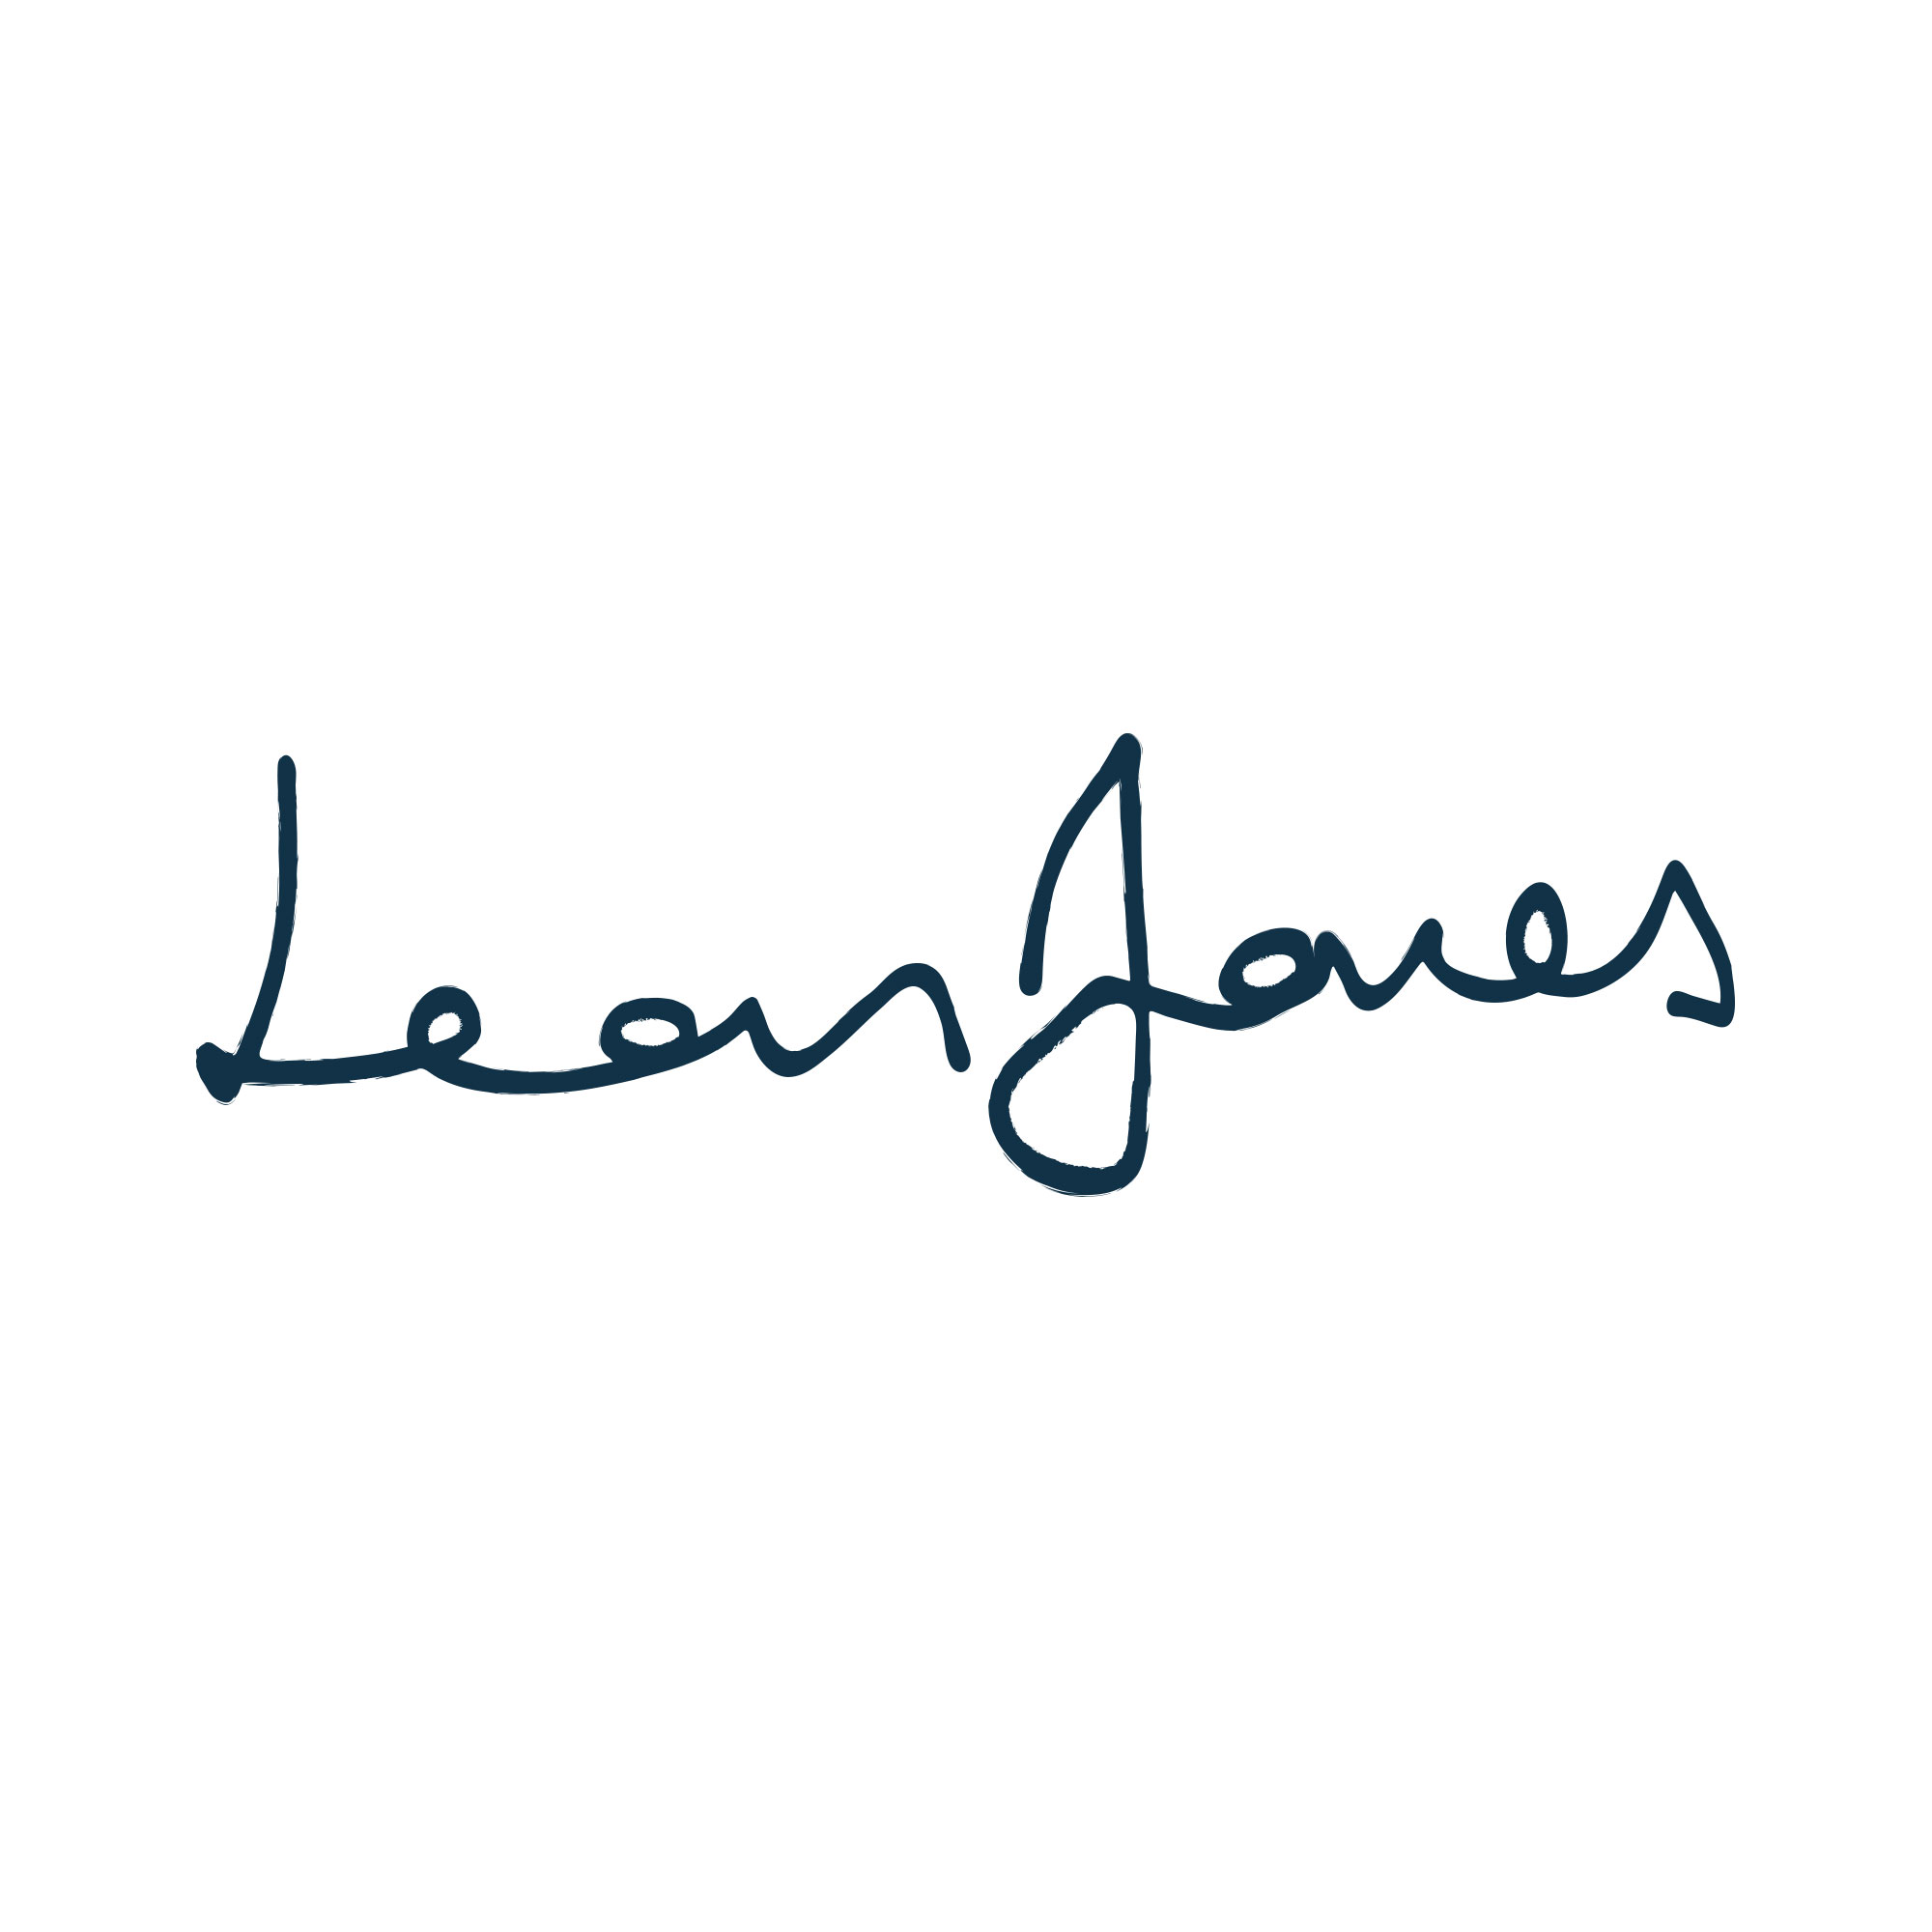 Leon Jones